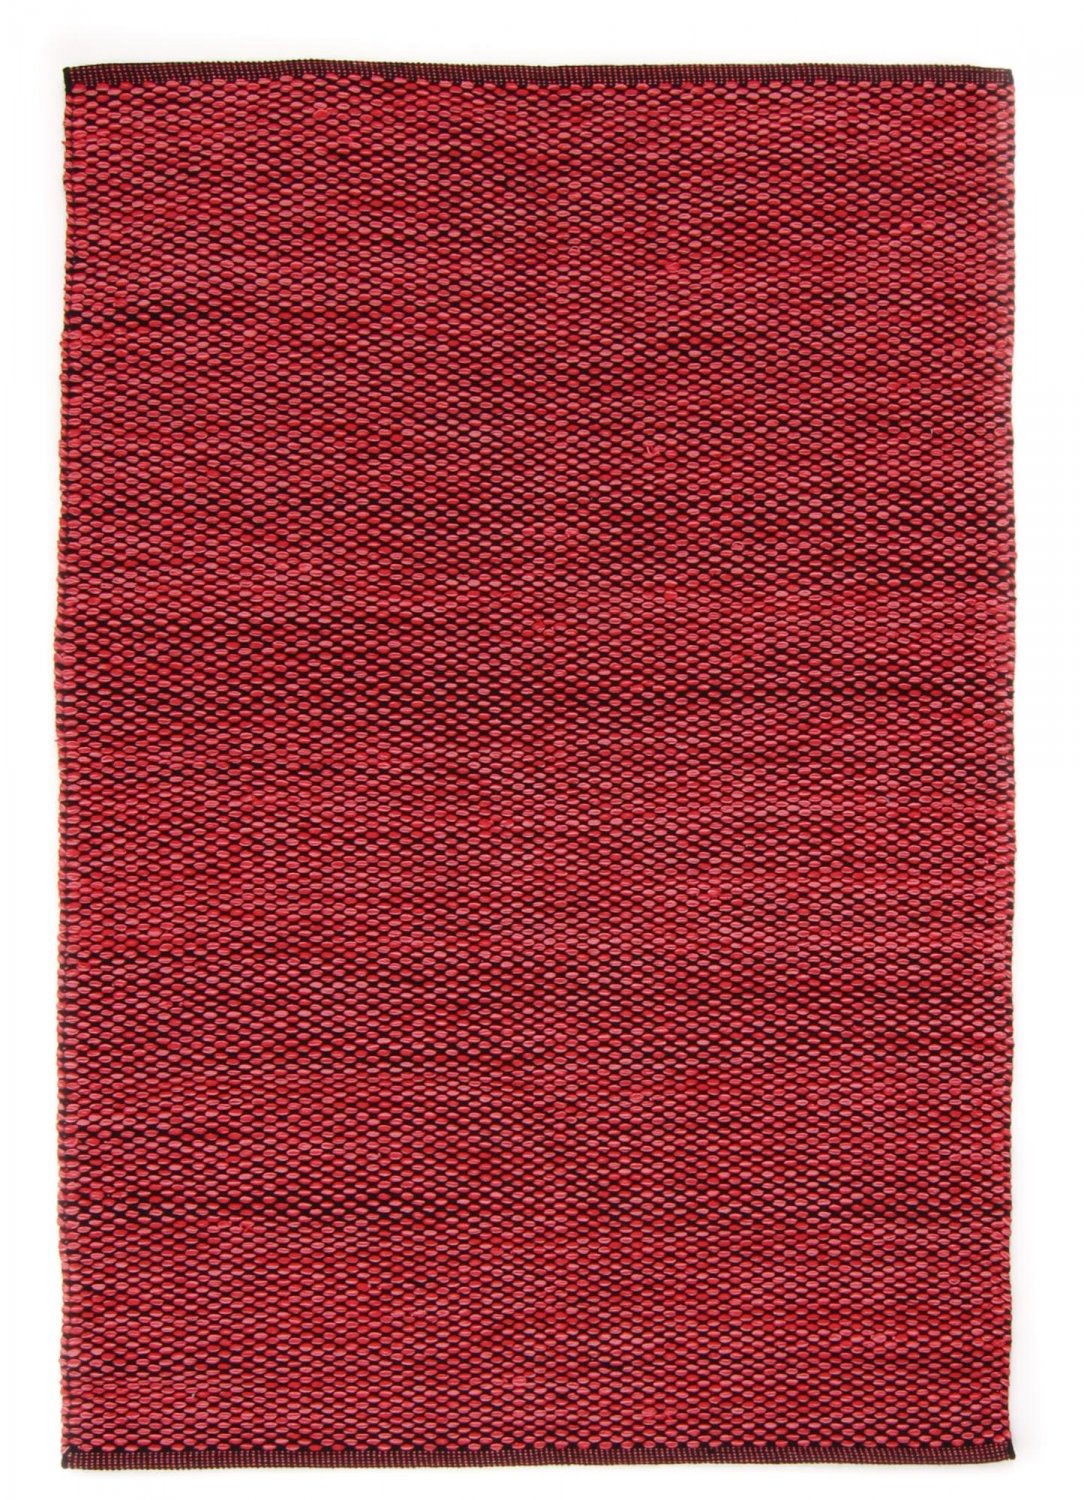 Voddenkleed - Tuva (rood)